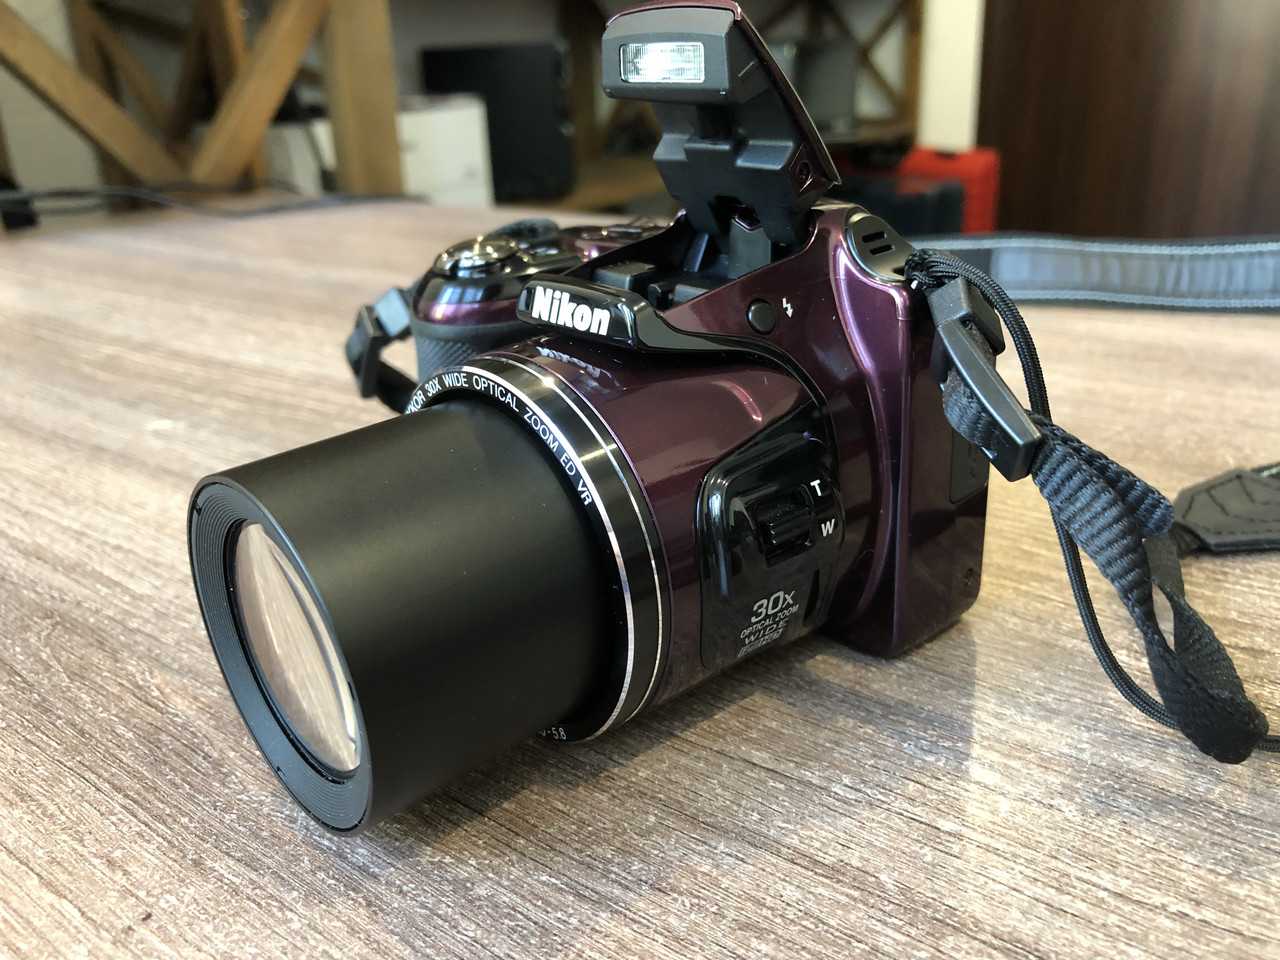 Цифровой фотоаппарат Nikon Coolpix L820 - подробные характеристики обзоры видео фото Цены в интернет-магазинах где можно купить цифровую фотоаппарат Nikon Coolpix L820